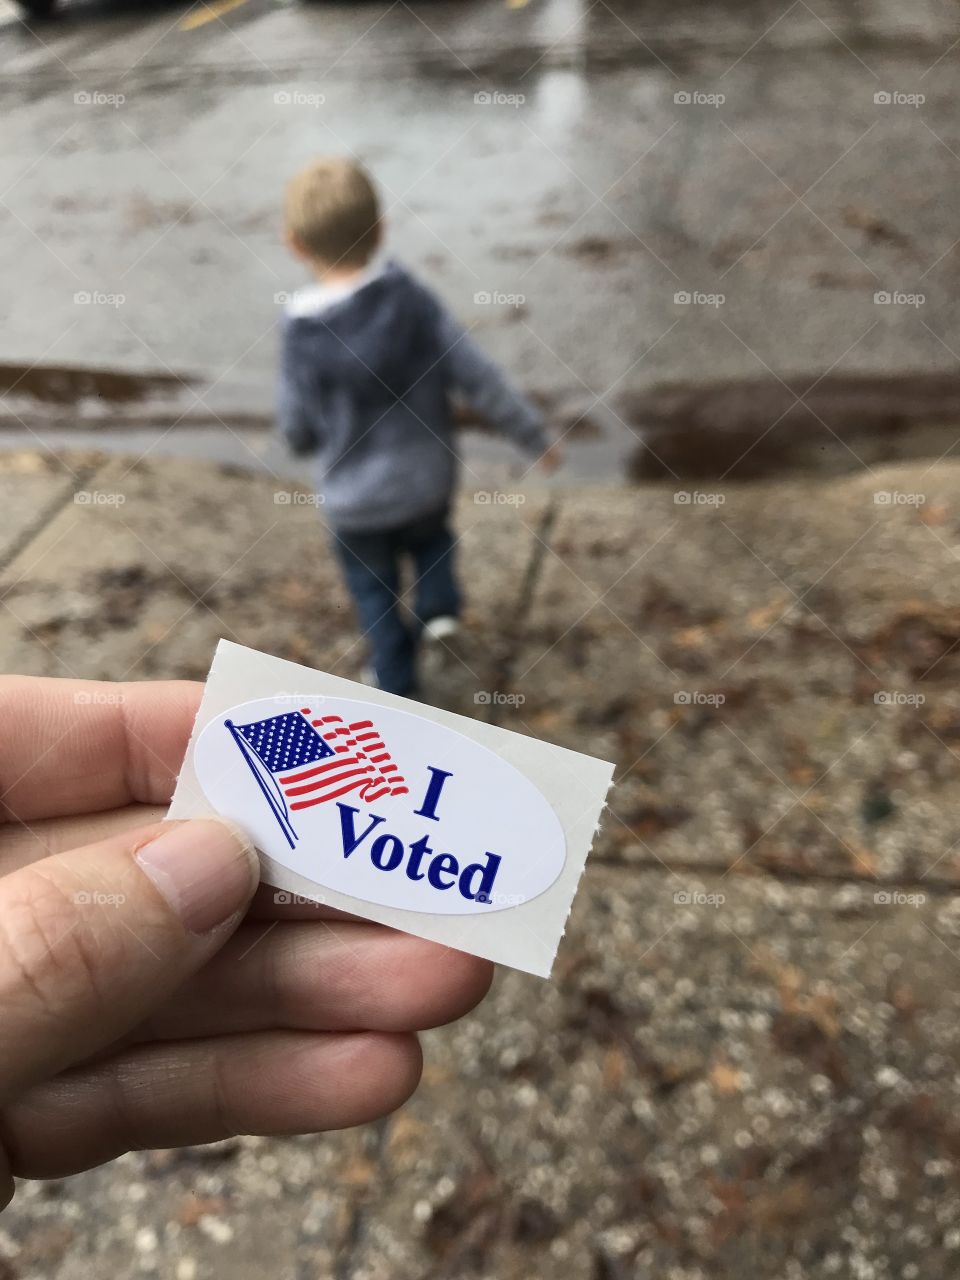 I voted.